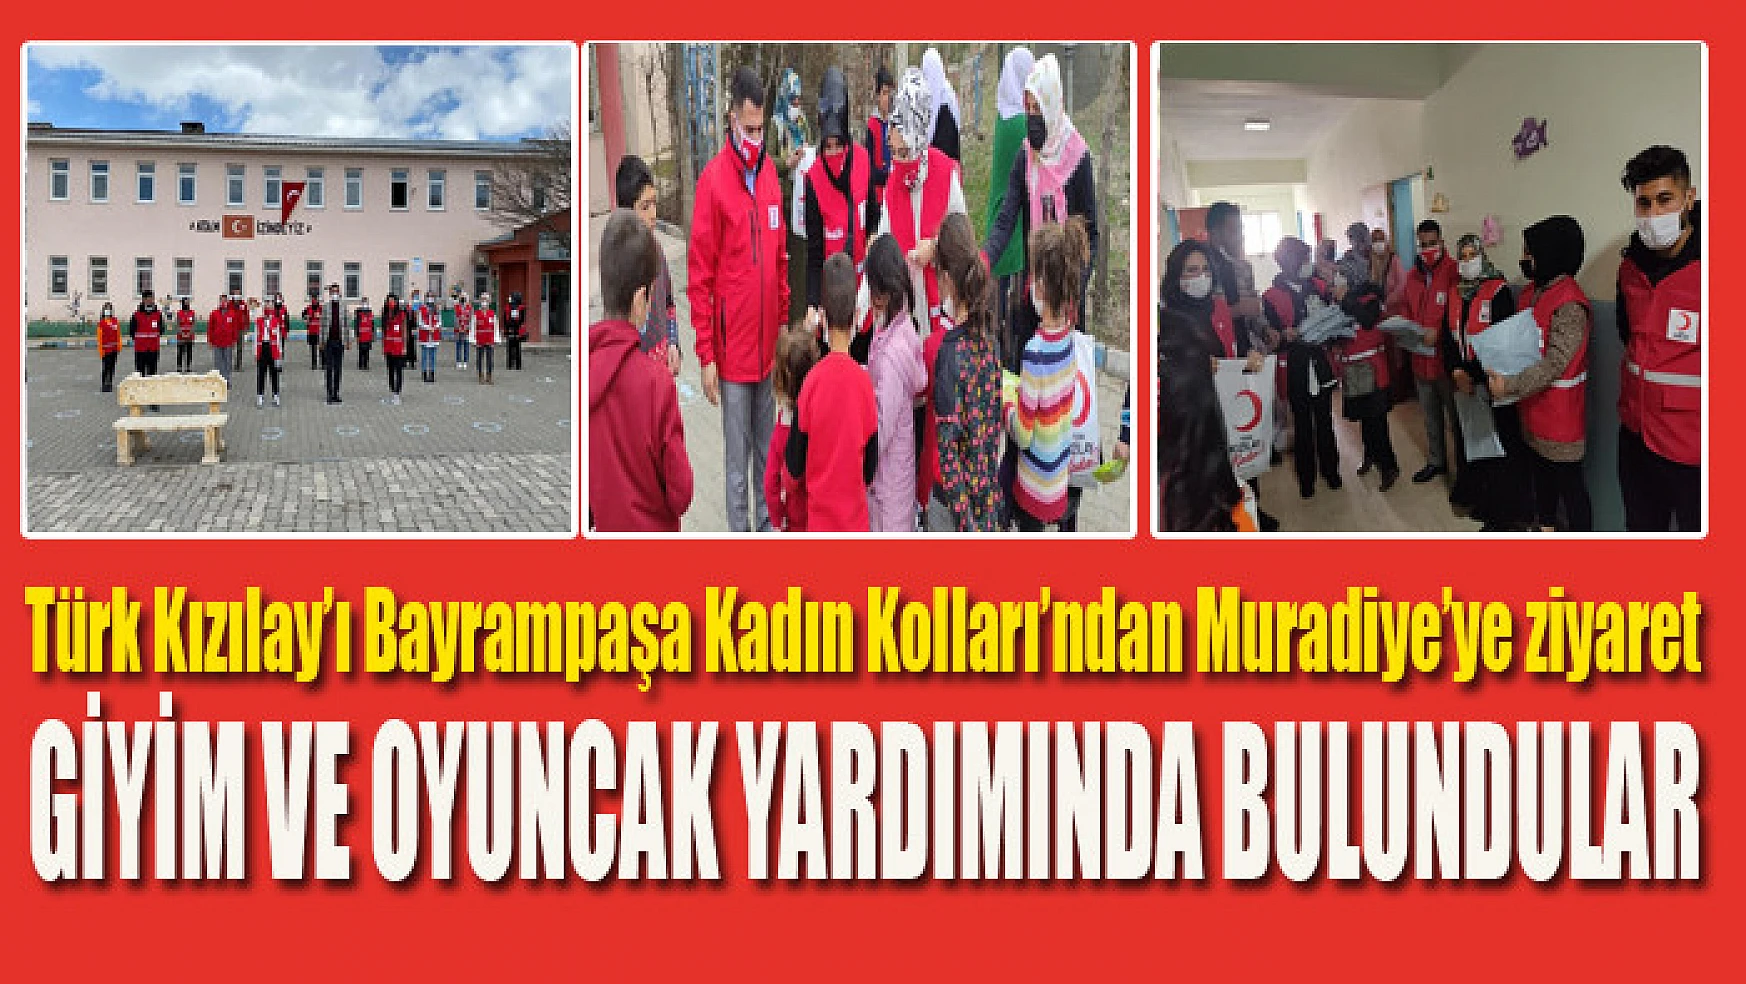 Türk Kızılay'ı Bayrampaşa Kadın Kolları'ndan Muradiye'ye ziyaret